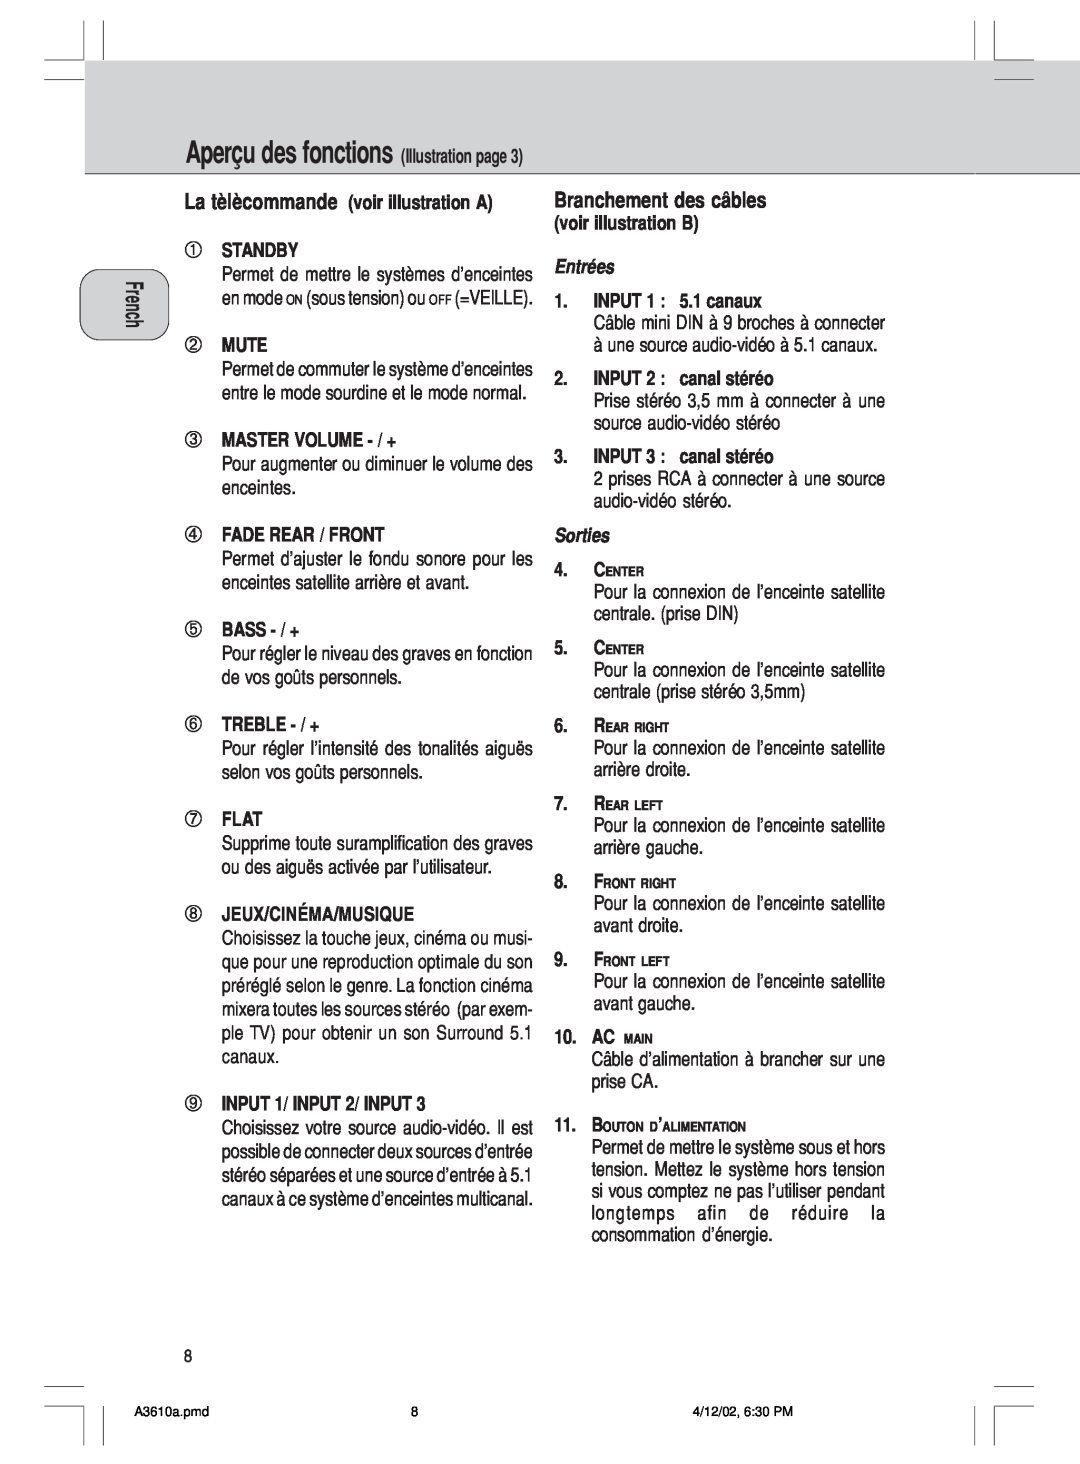 Philips A3.610, MMS316 manual AperÁu des fonctions Illustration page, Jeux/Cinéma/Musique 